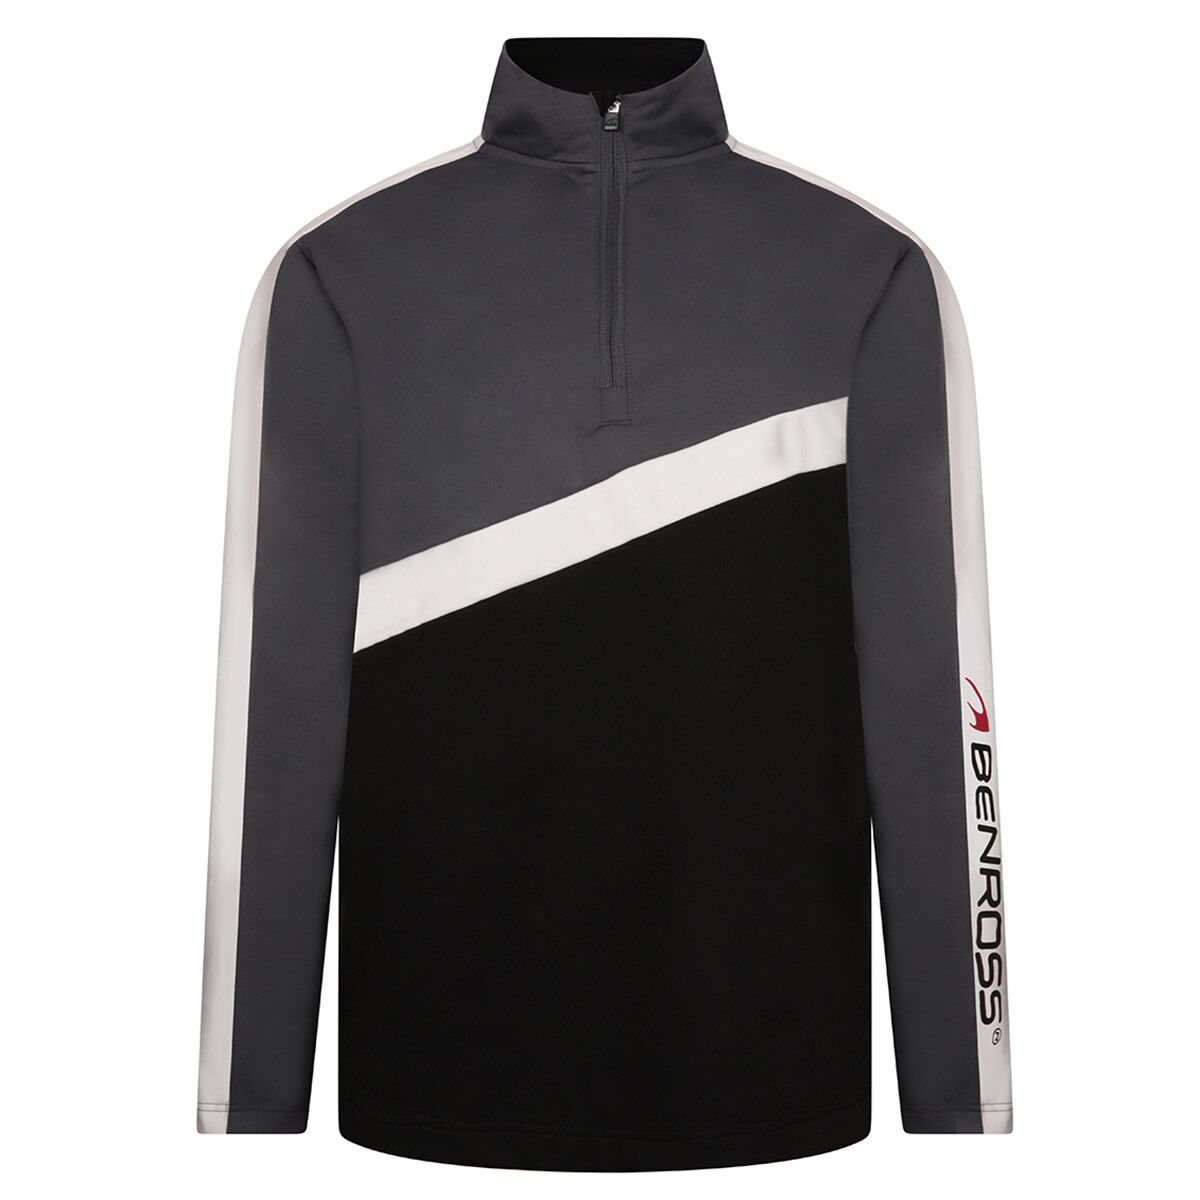 Vêtement intermédiaire Barricade Benross, homme, Grey/ black, Small  | Online Golf